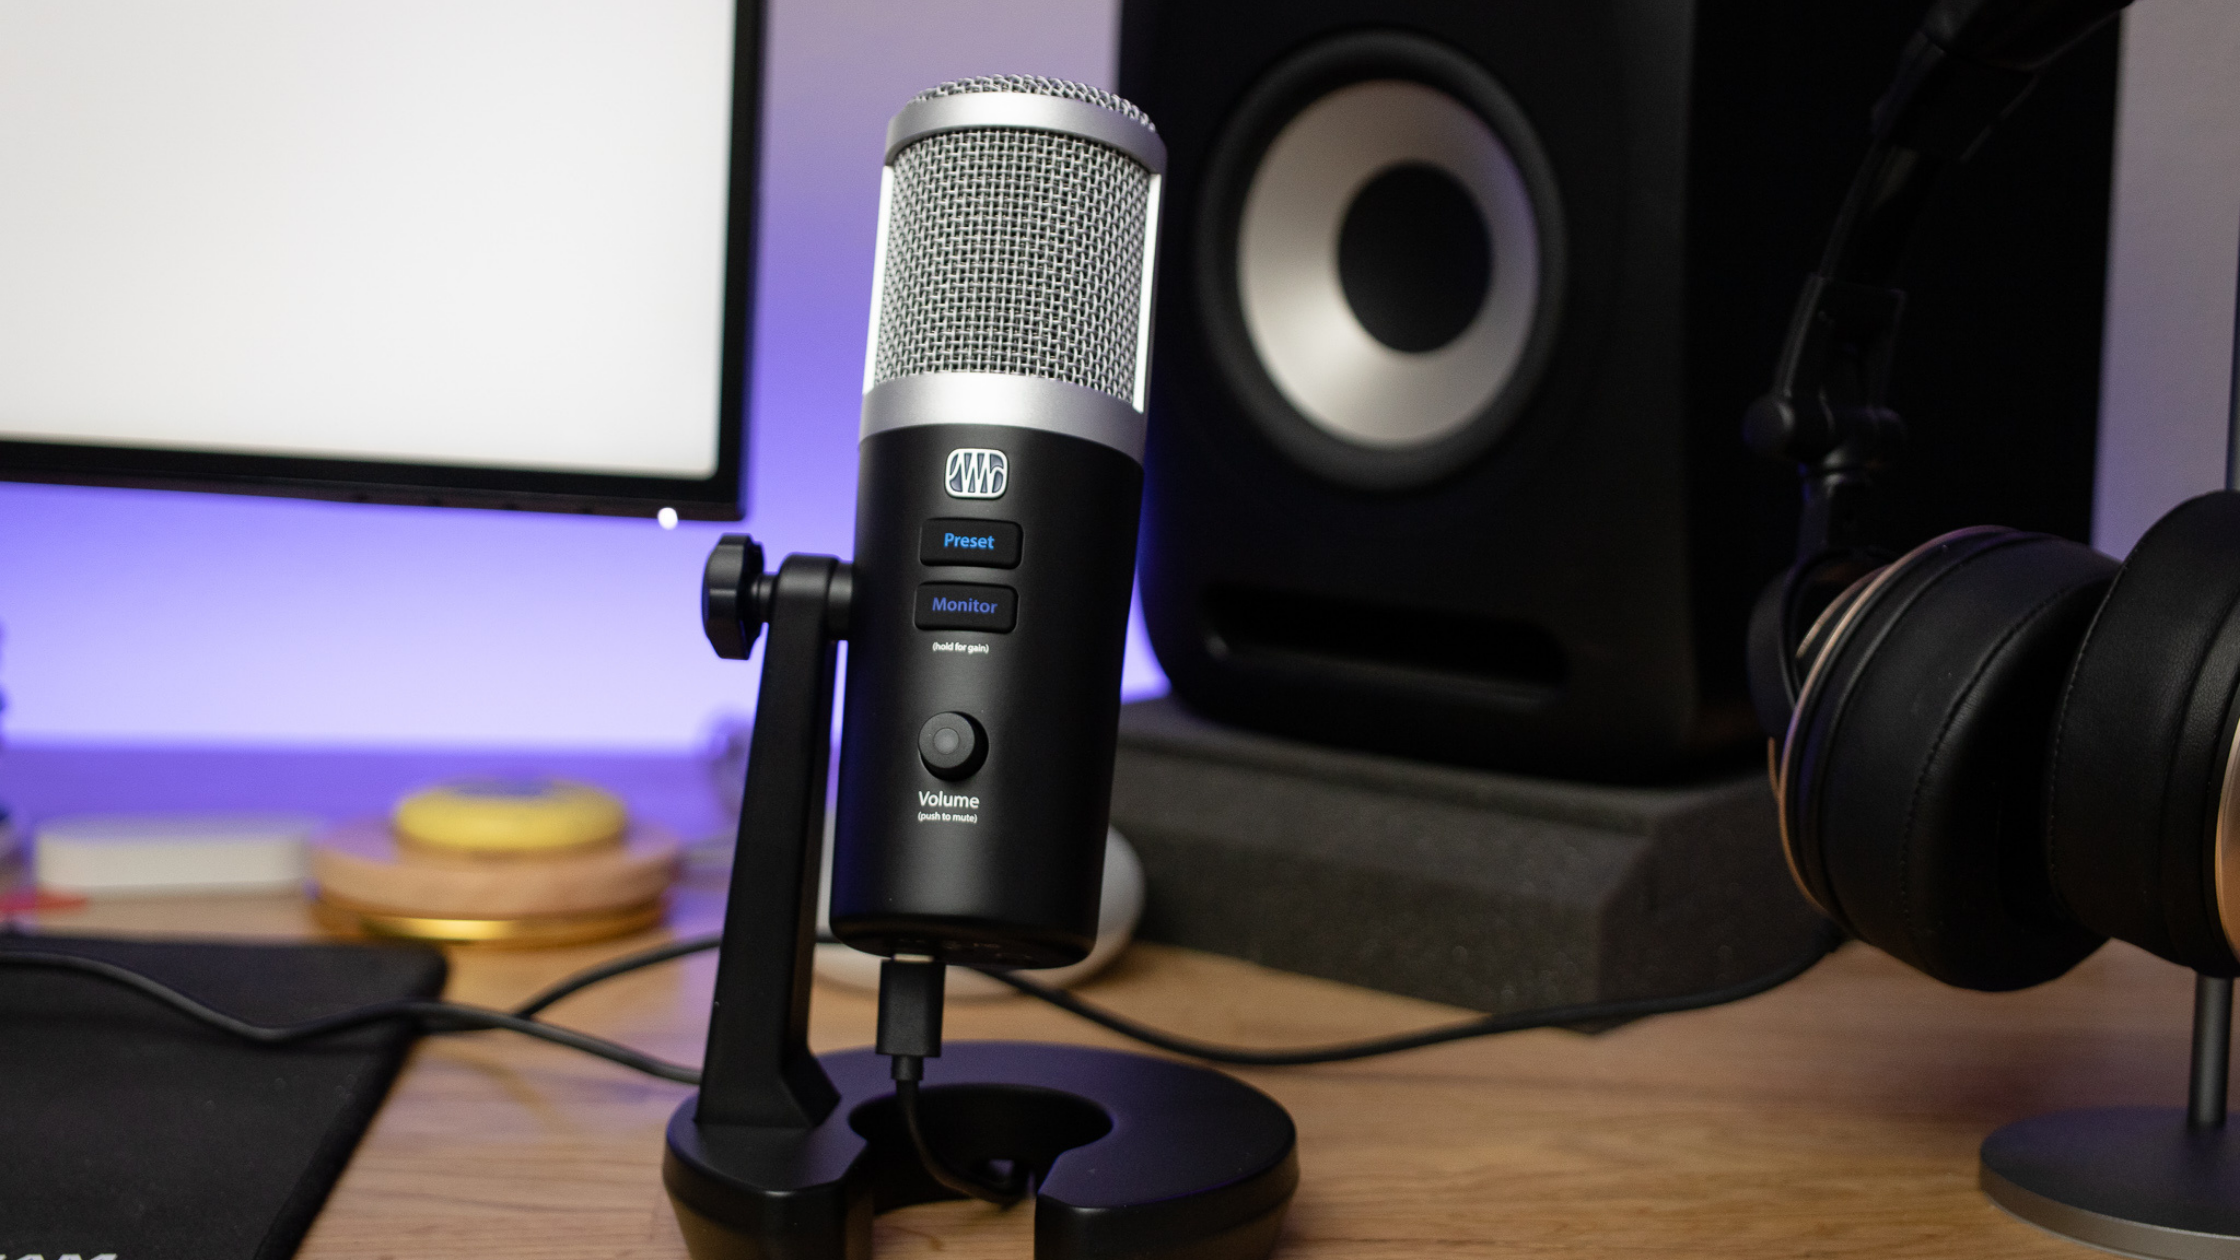 Exact Yeti Blue mic volume and Windows settings to reduce background noise